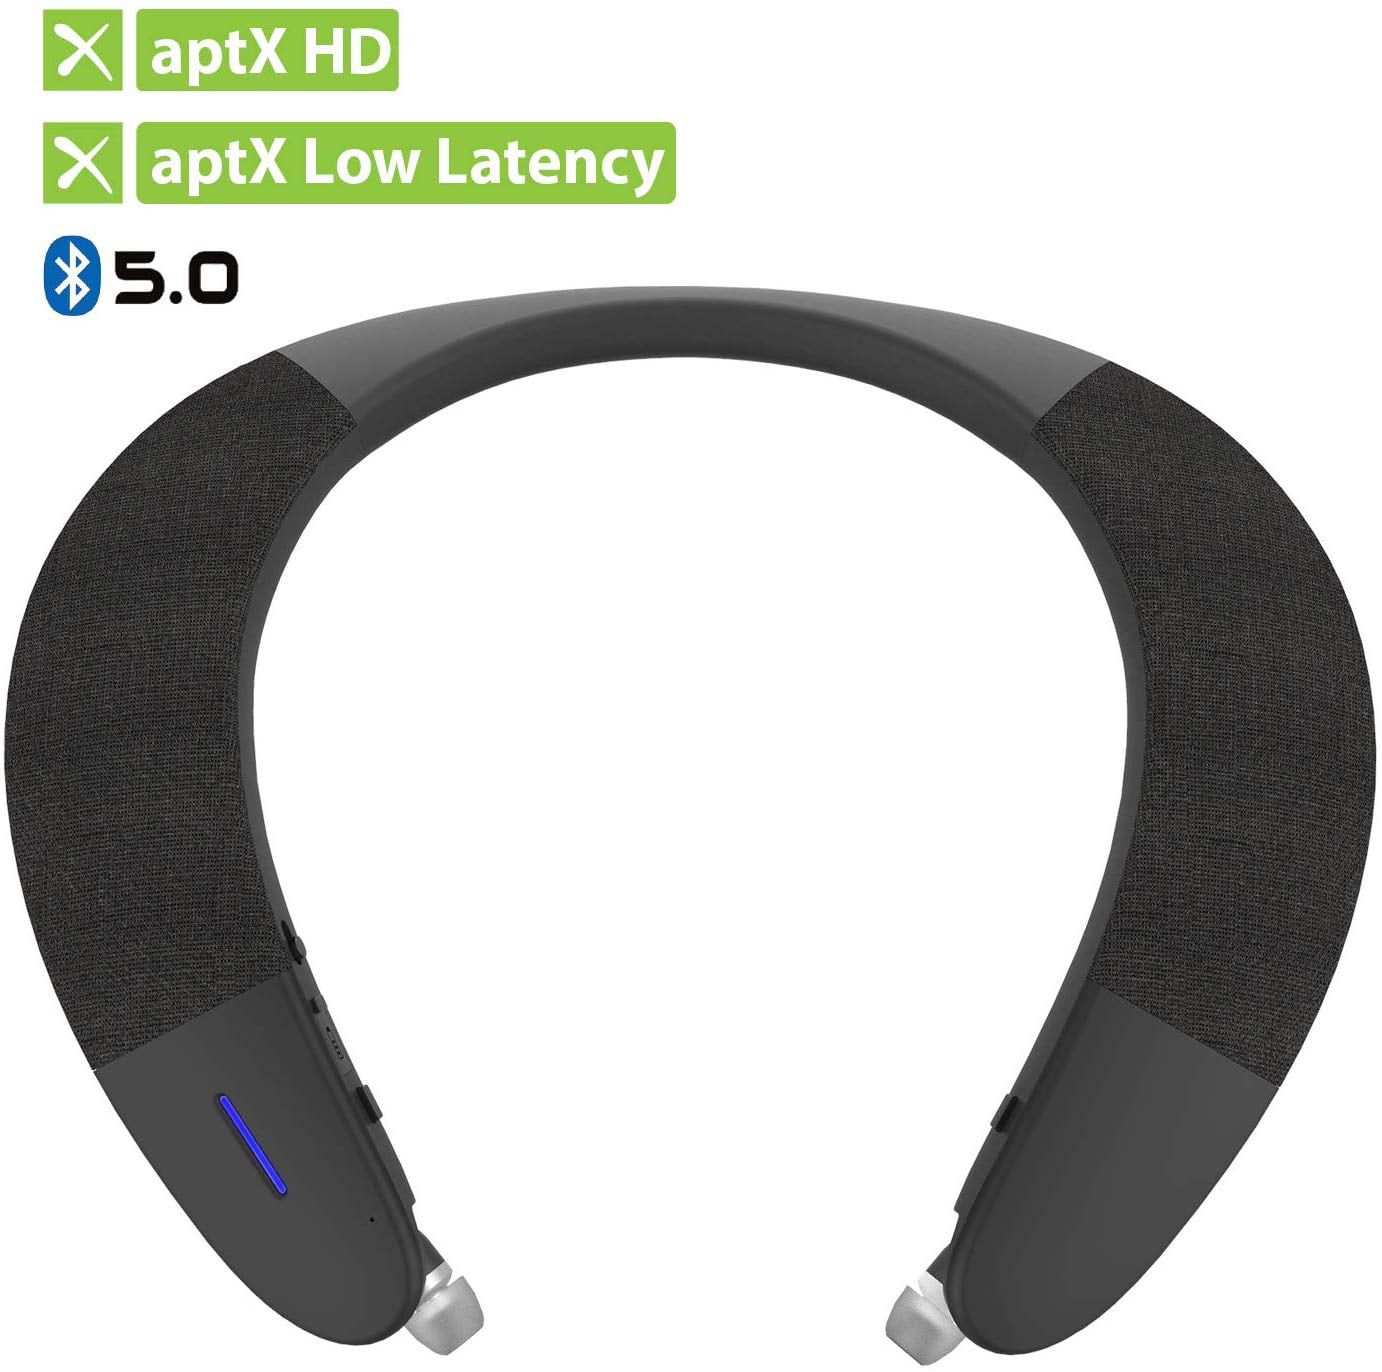 Avantree Wearable Wireless Speaker Low Latency, aptX HD Bluetooth 5.0 